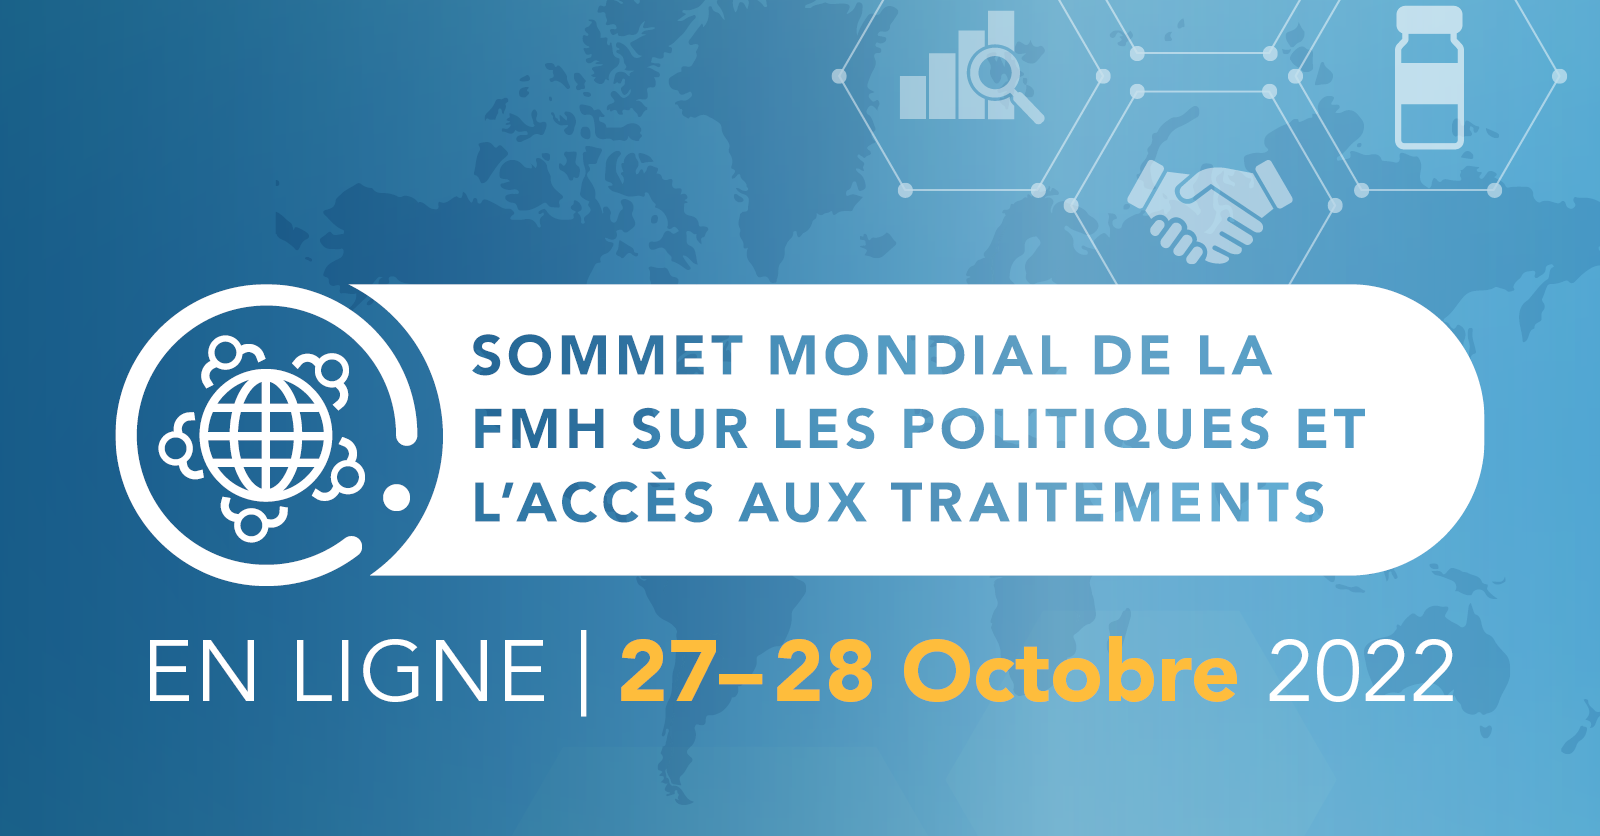 Sommet mondial de la FMH sur les politiques et l’accès aux traitements